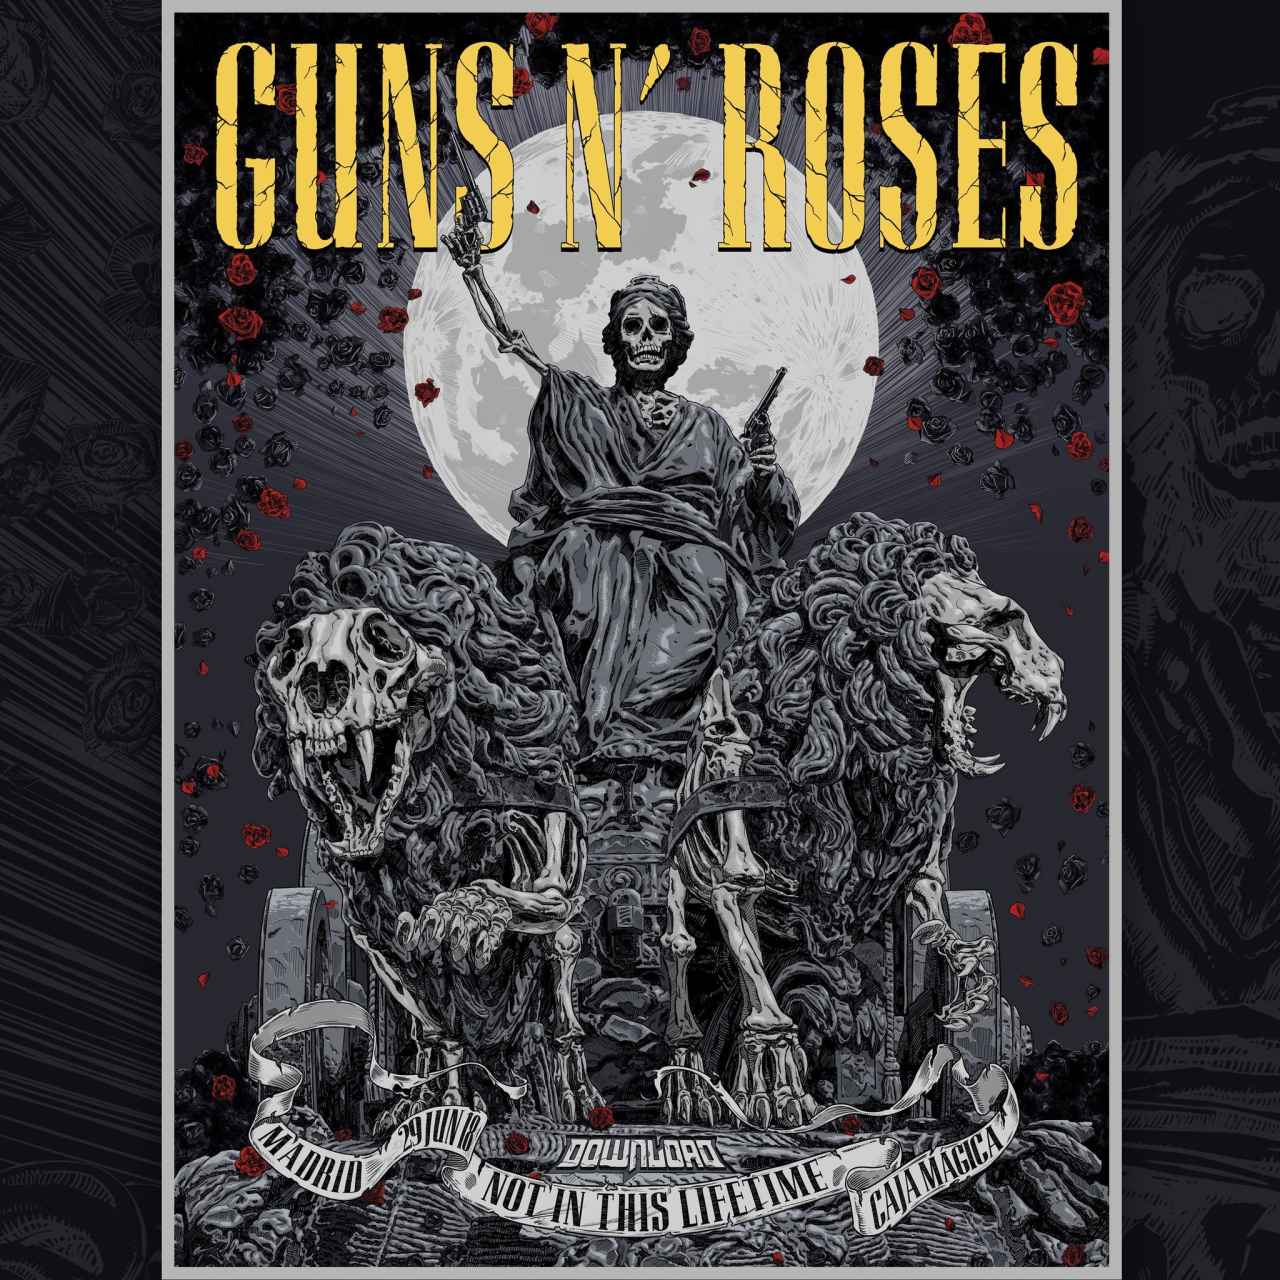 Cartel para el concierto de los Guns N' Roses en Madrid.